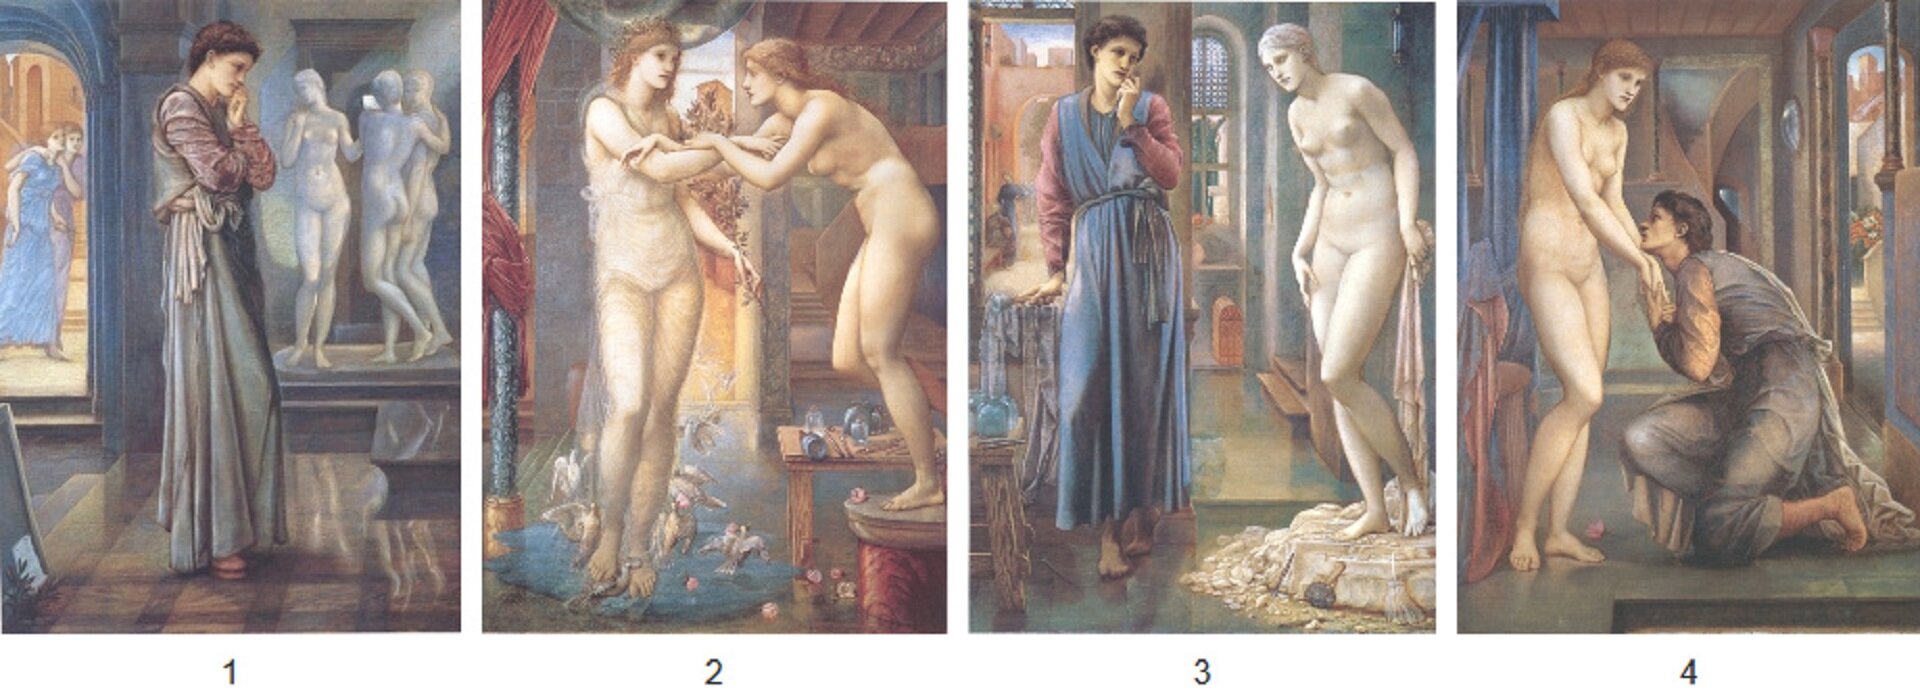 Odpowiedz na pytanie: Z jakiego tworzywa Pigmalion wyrzeźbił posąg Galatei? Możliwe odpowiedzi: 1. z marmuru, 2. z brązu, 3. z kości słoniowej